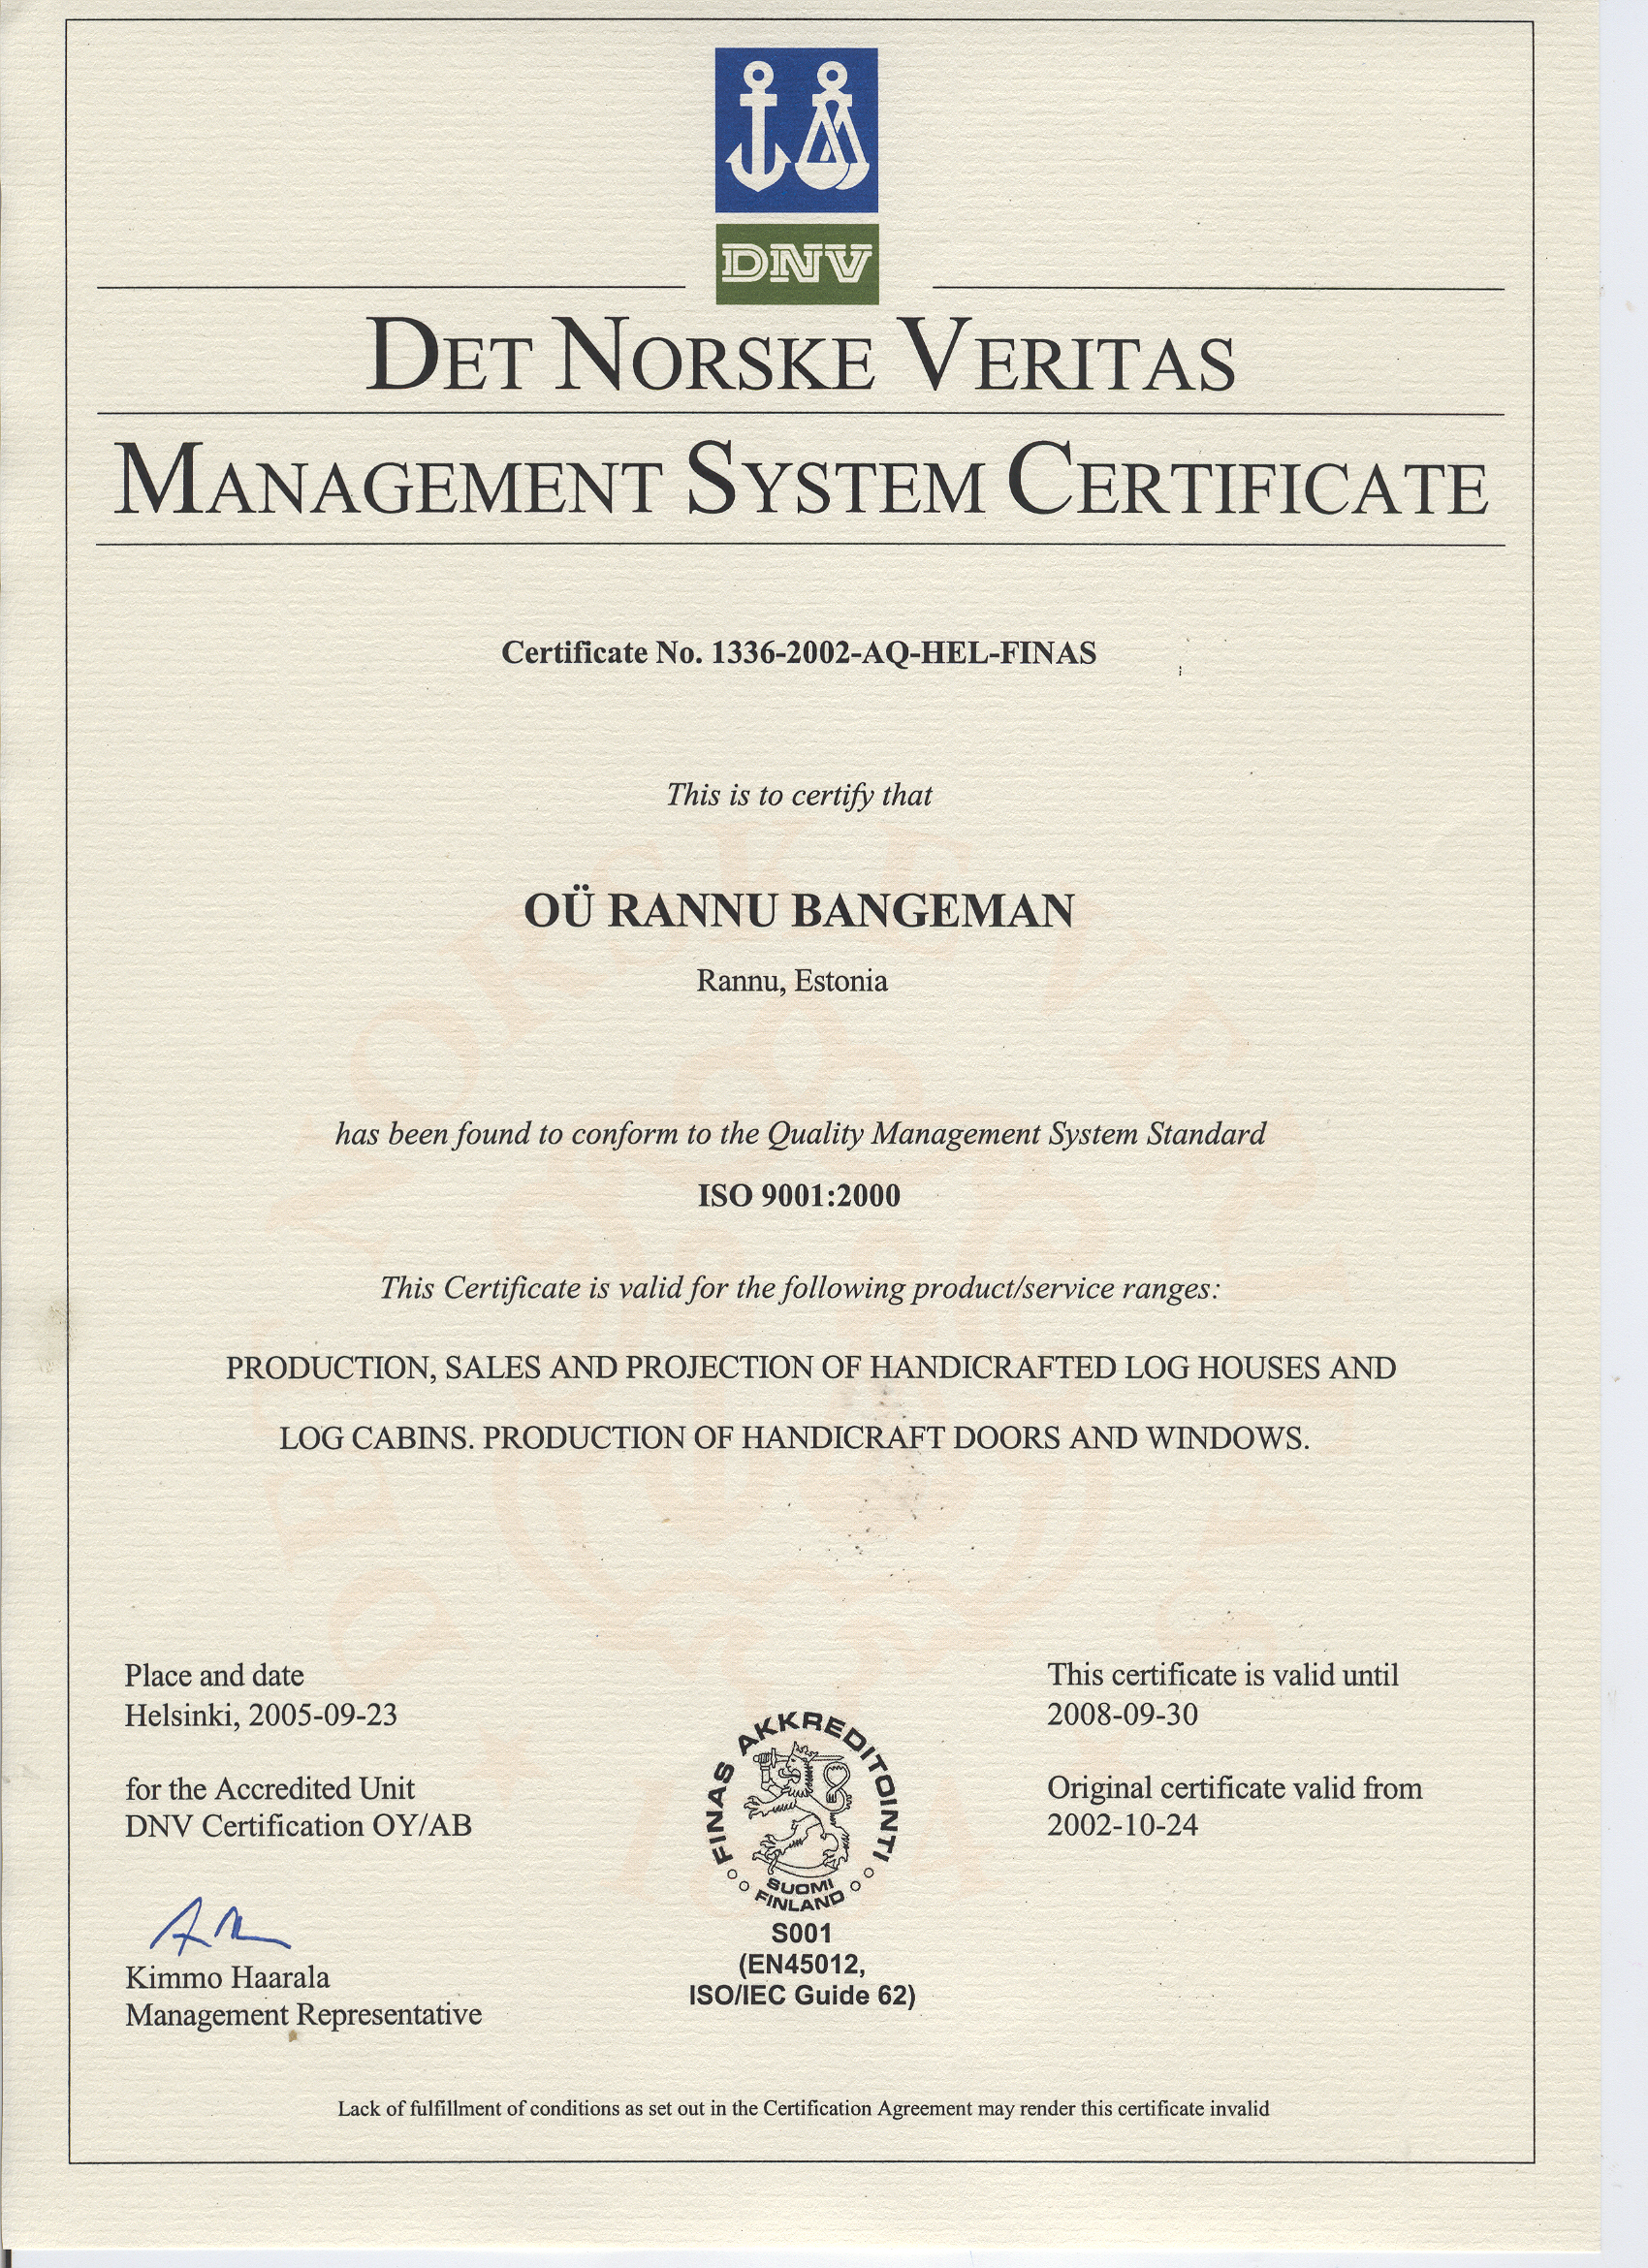 dnv sertifikat